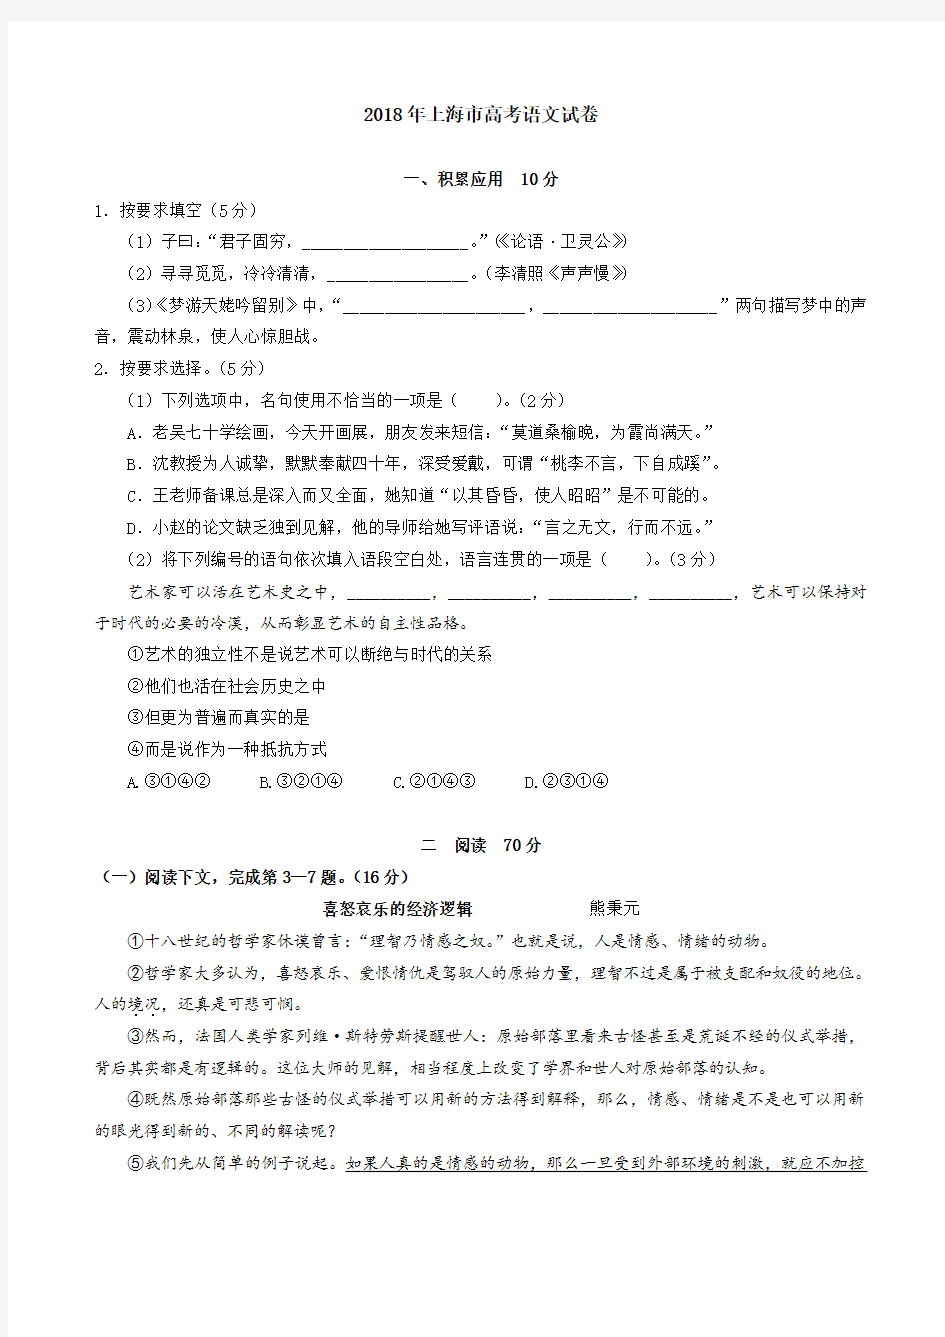 (完整word版)2018年上海高考语文试卷最新真题版